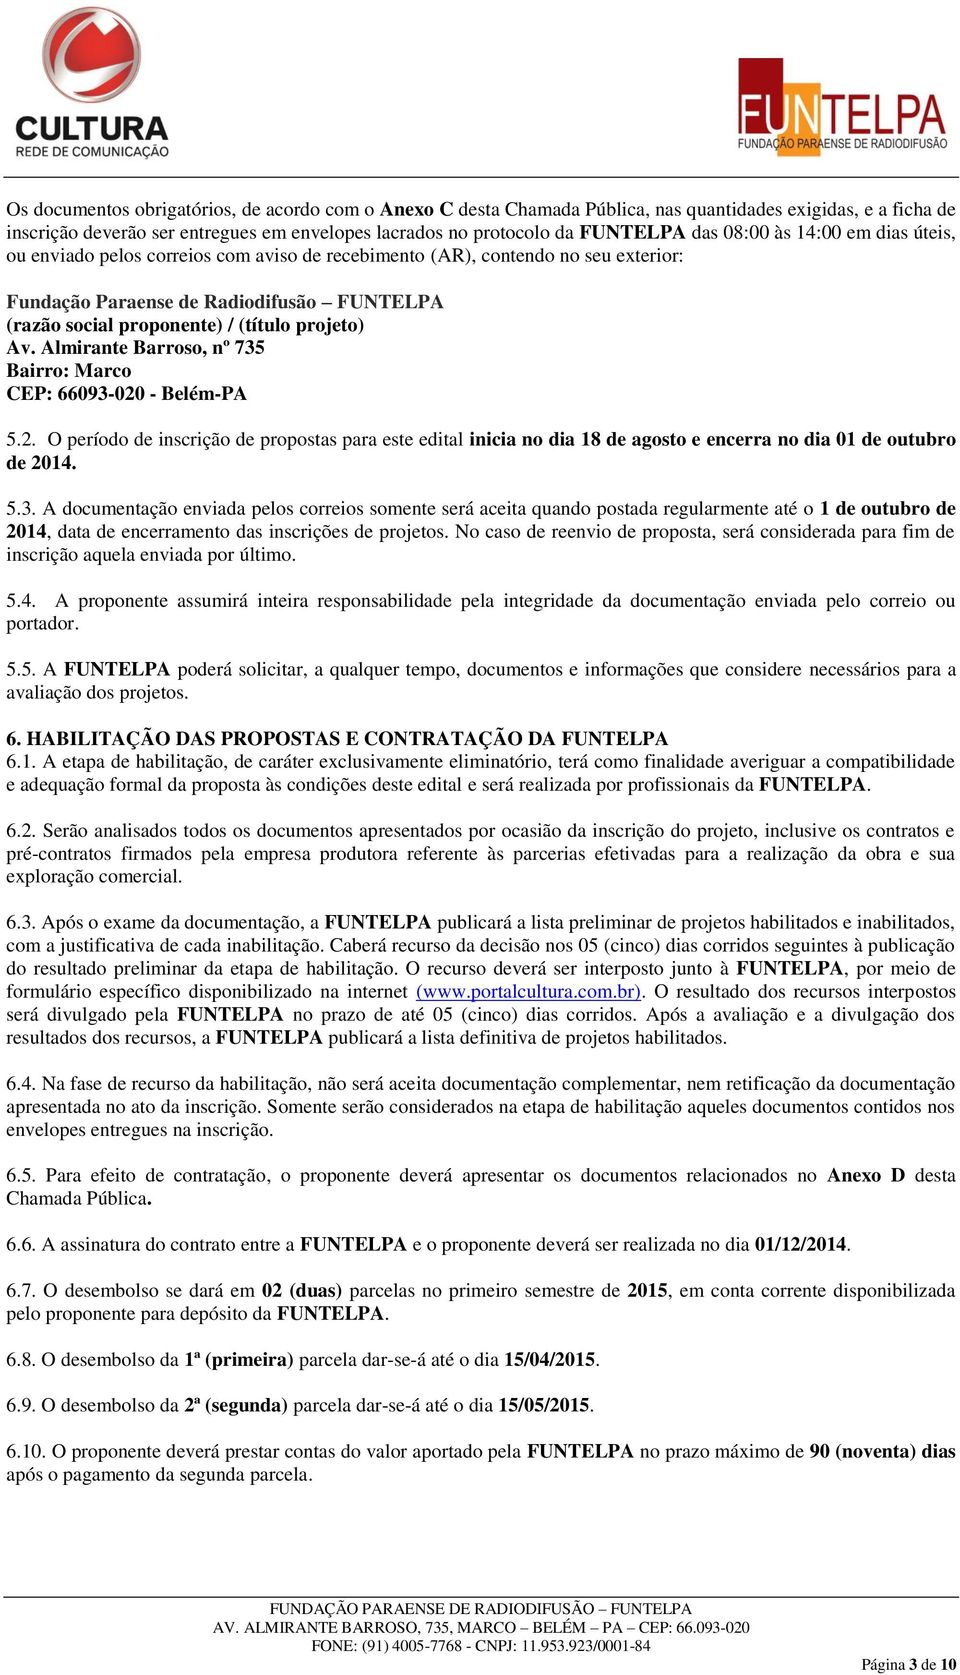 projeto) Av. Almirante Barroso, nº 735 Bairro: Marco CEP: 66093-020 - Belém-PA 5.2. O período de inscrição de propostas para este edital inicia no dia 18 de agosto e encerra no dia 01 de outubro de 2014.